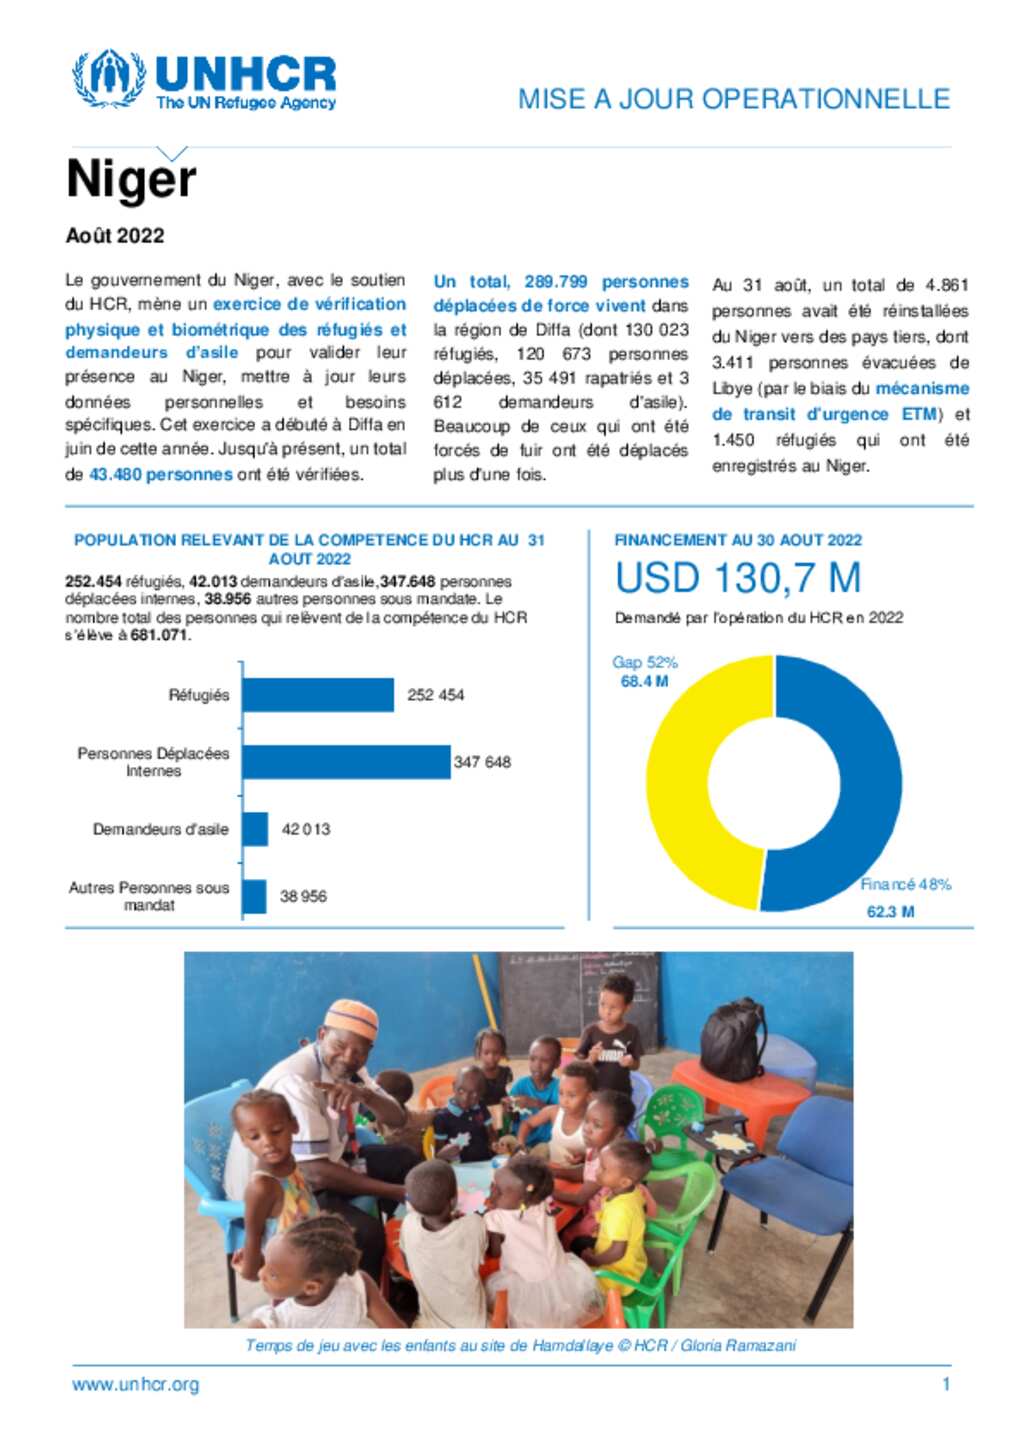 Document - UNHCR Niger - Mise à jour operationnelle - Aout 2022